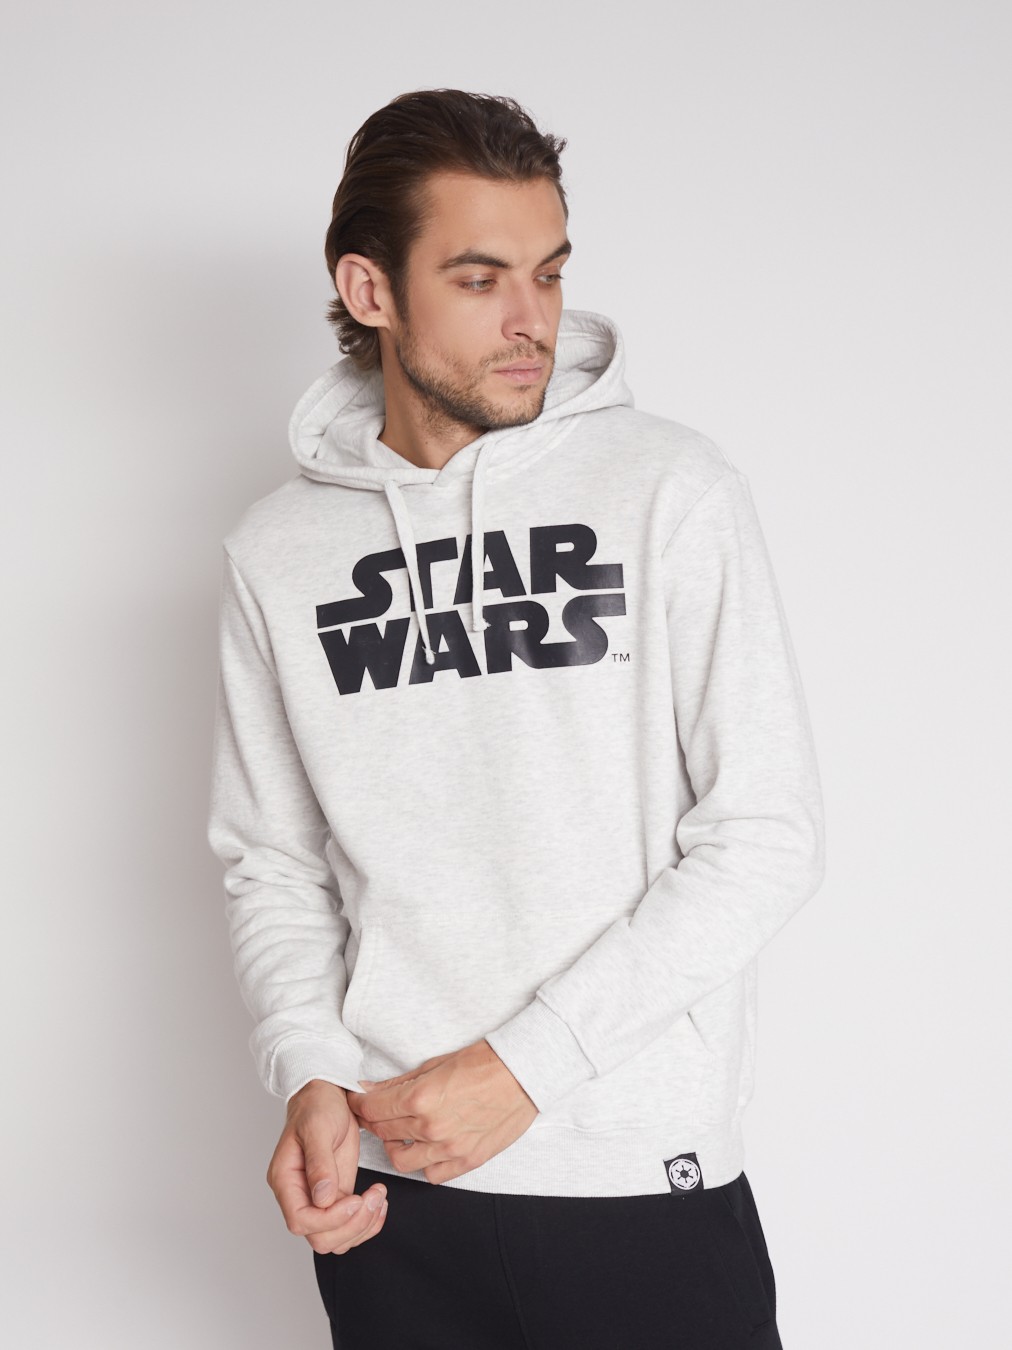 Худи с принтом Звёздные войны (Star Wars) zolla 512334179081, цвет светло-серый, размер S - фото 3